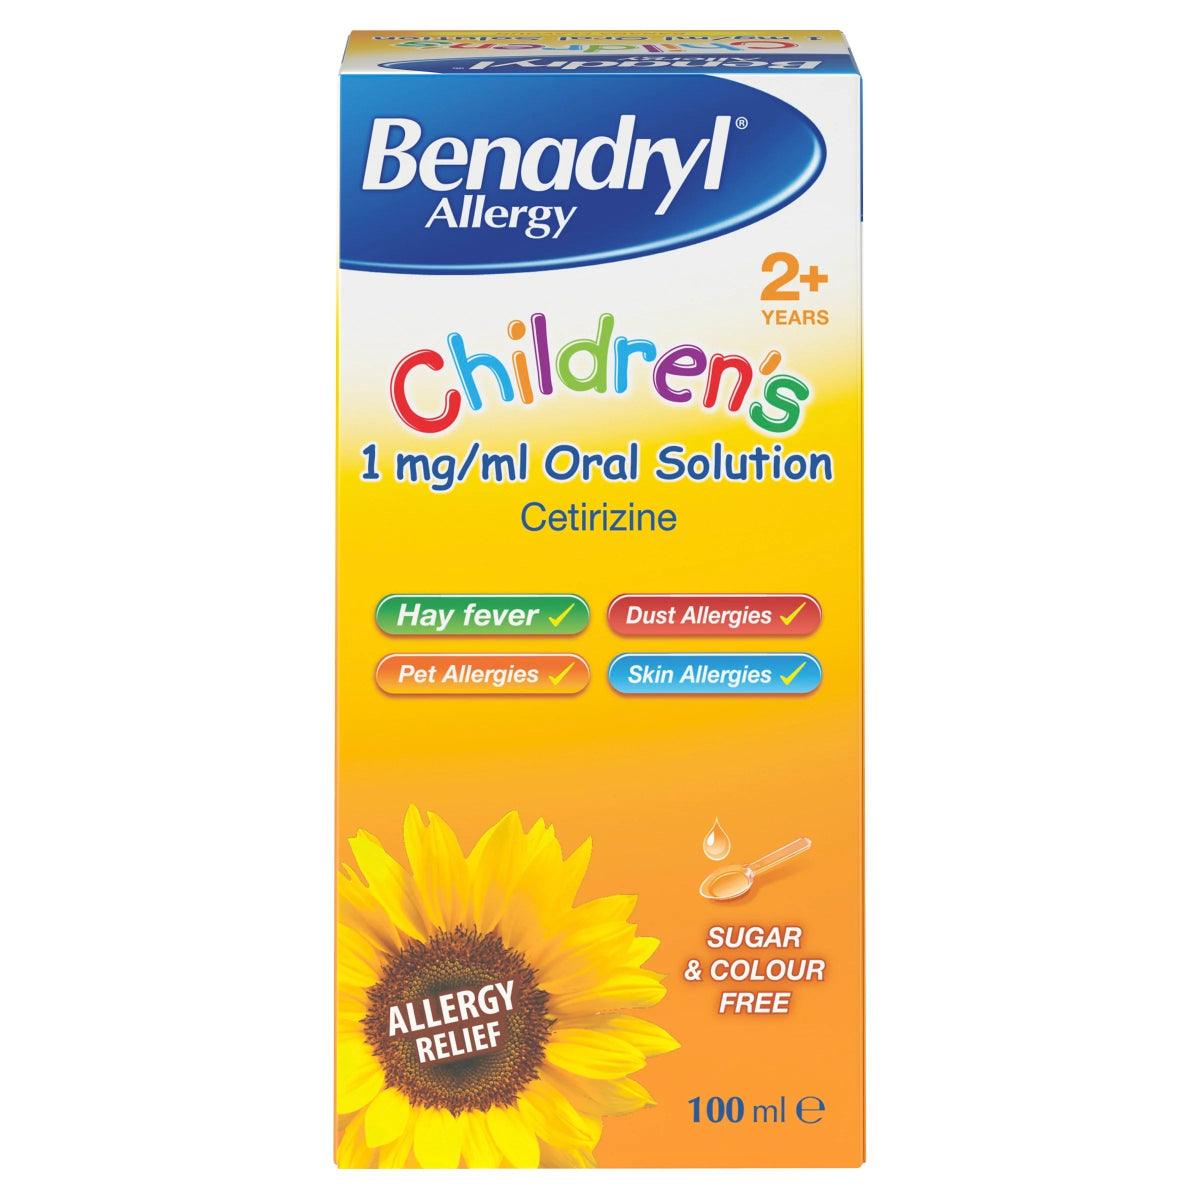 Benadryl Allergy Children's 1mg/ml Oral Solution - 100ml - Rightangled